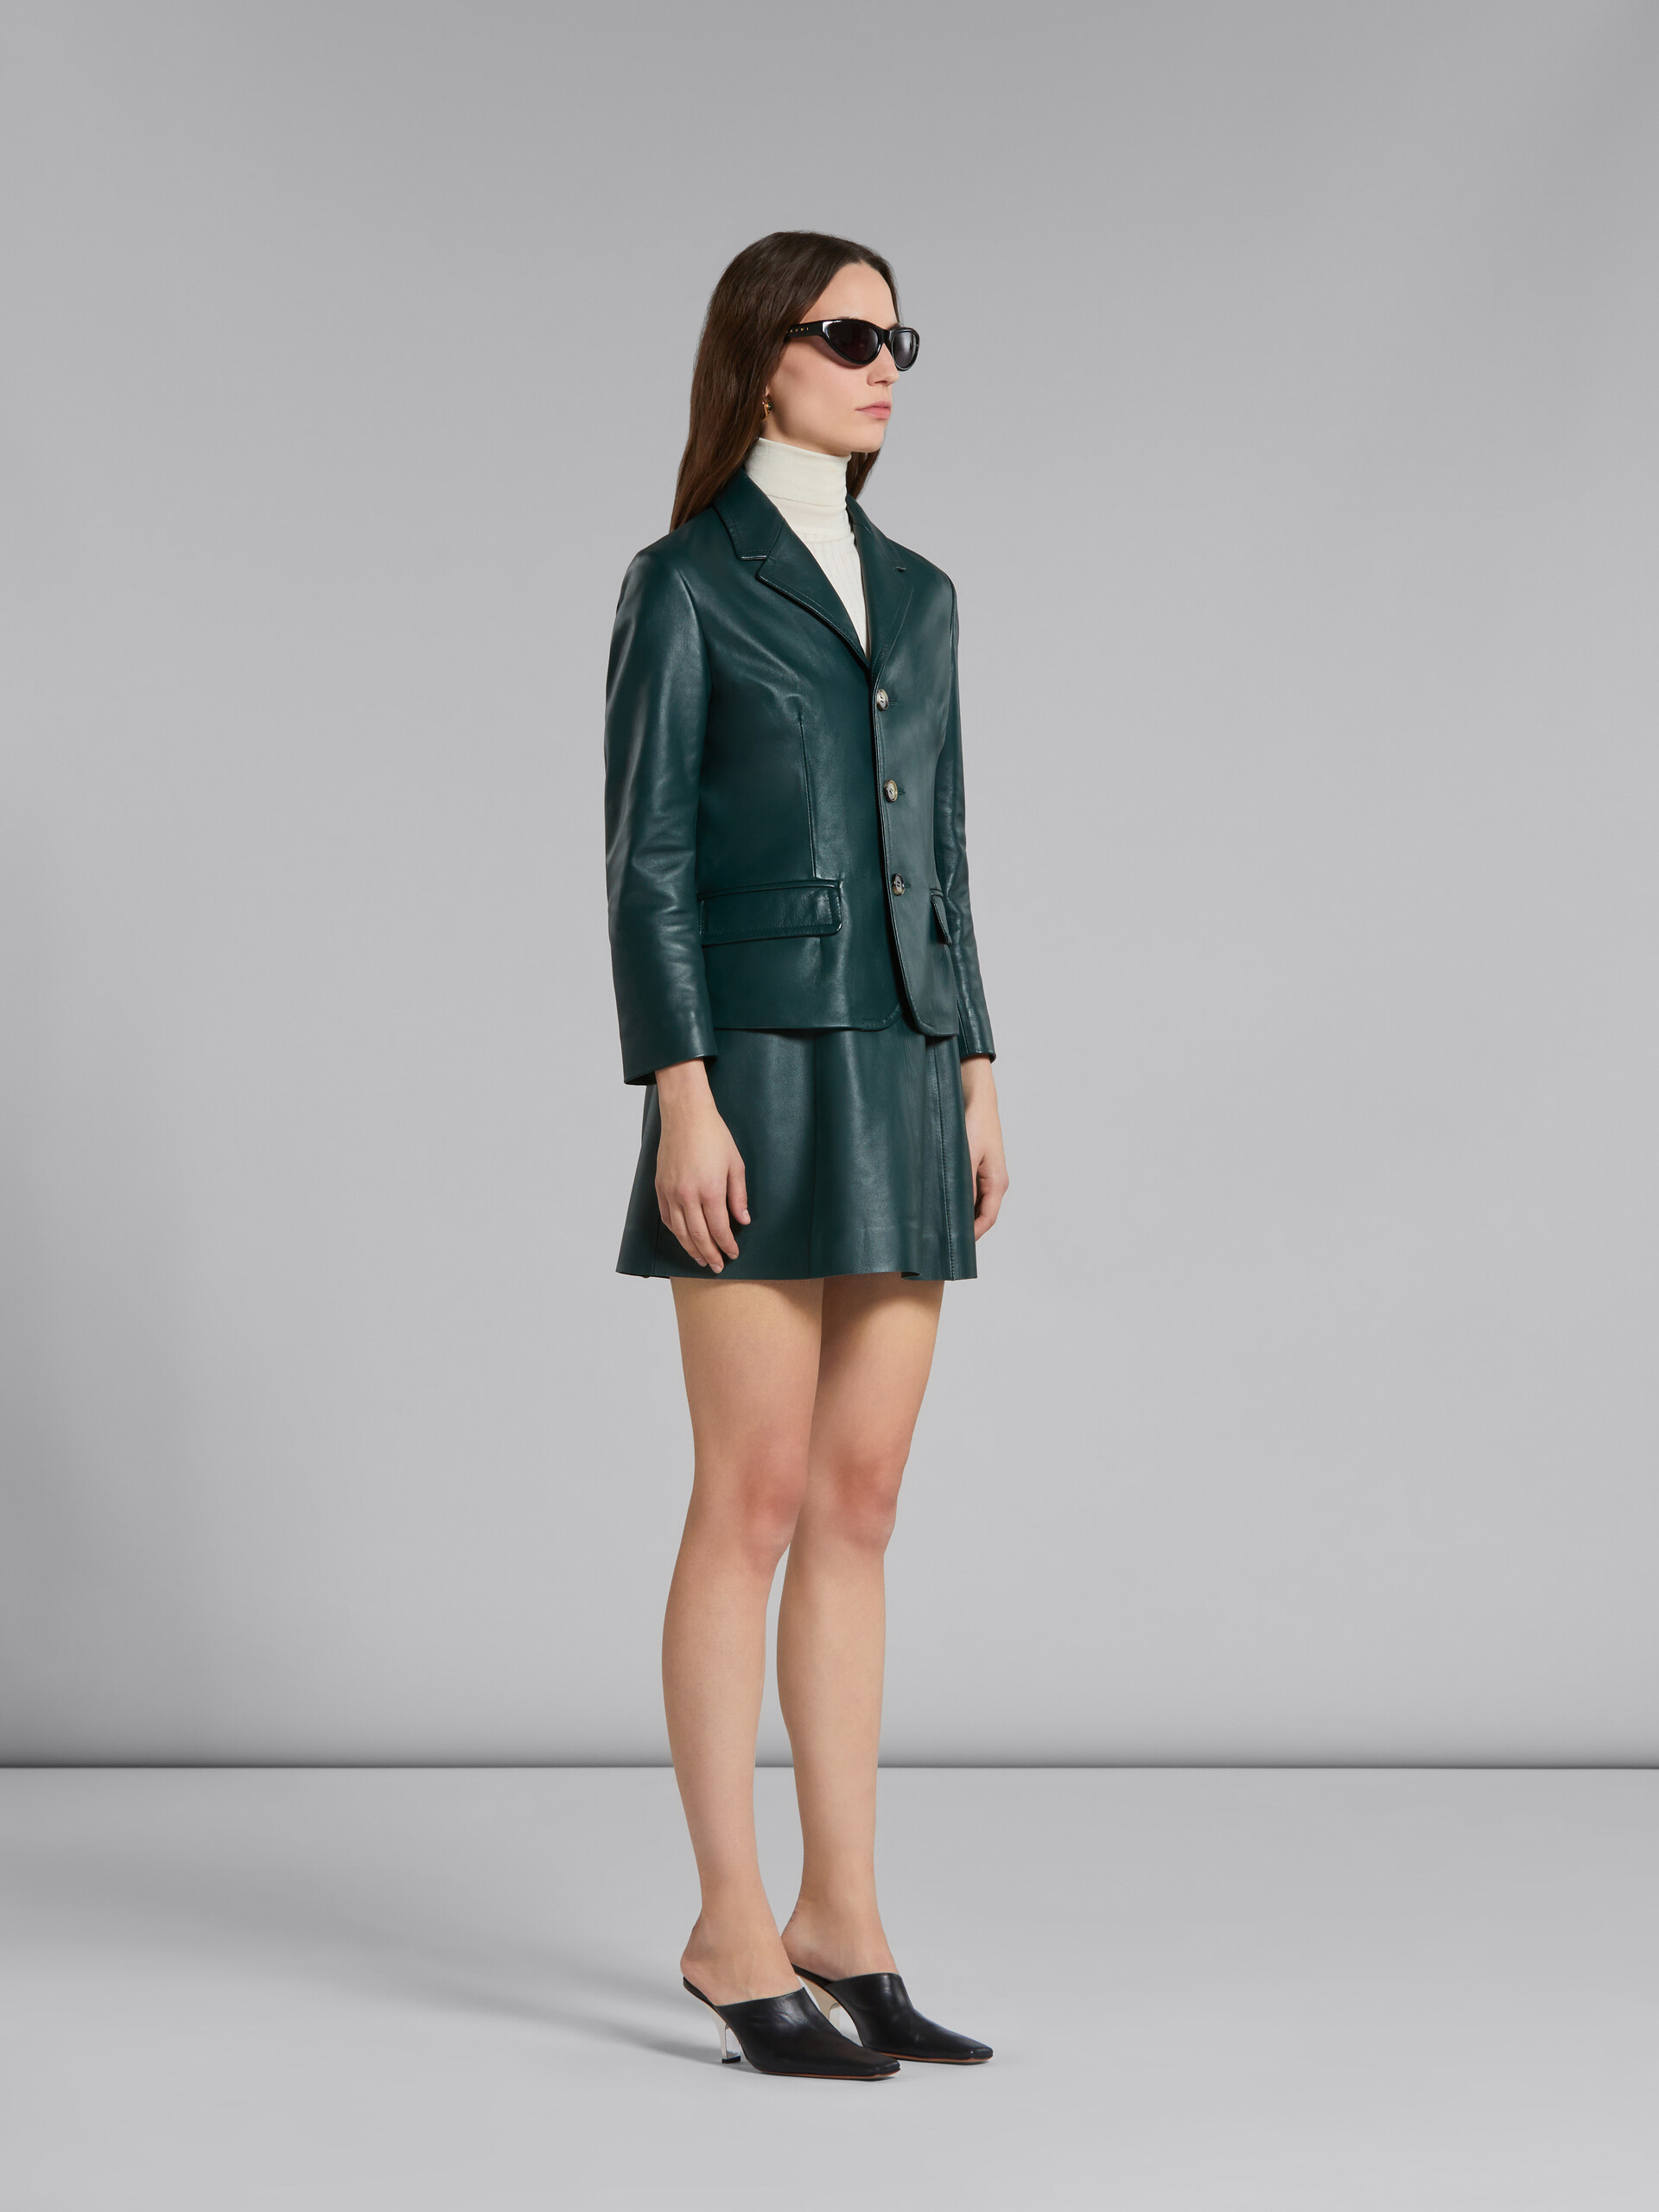 Green leather jacket - Jackets - Image 6